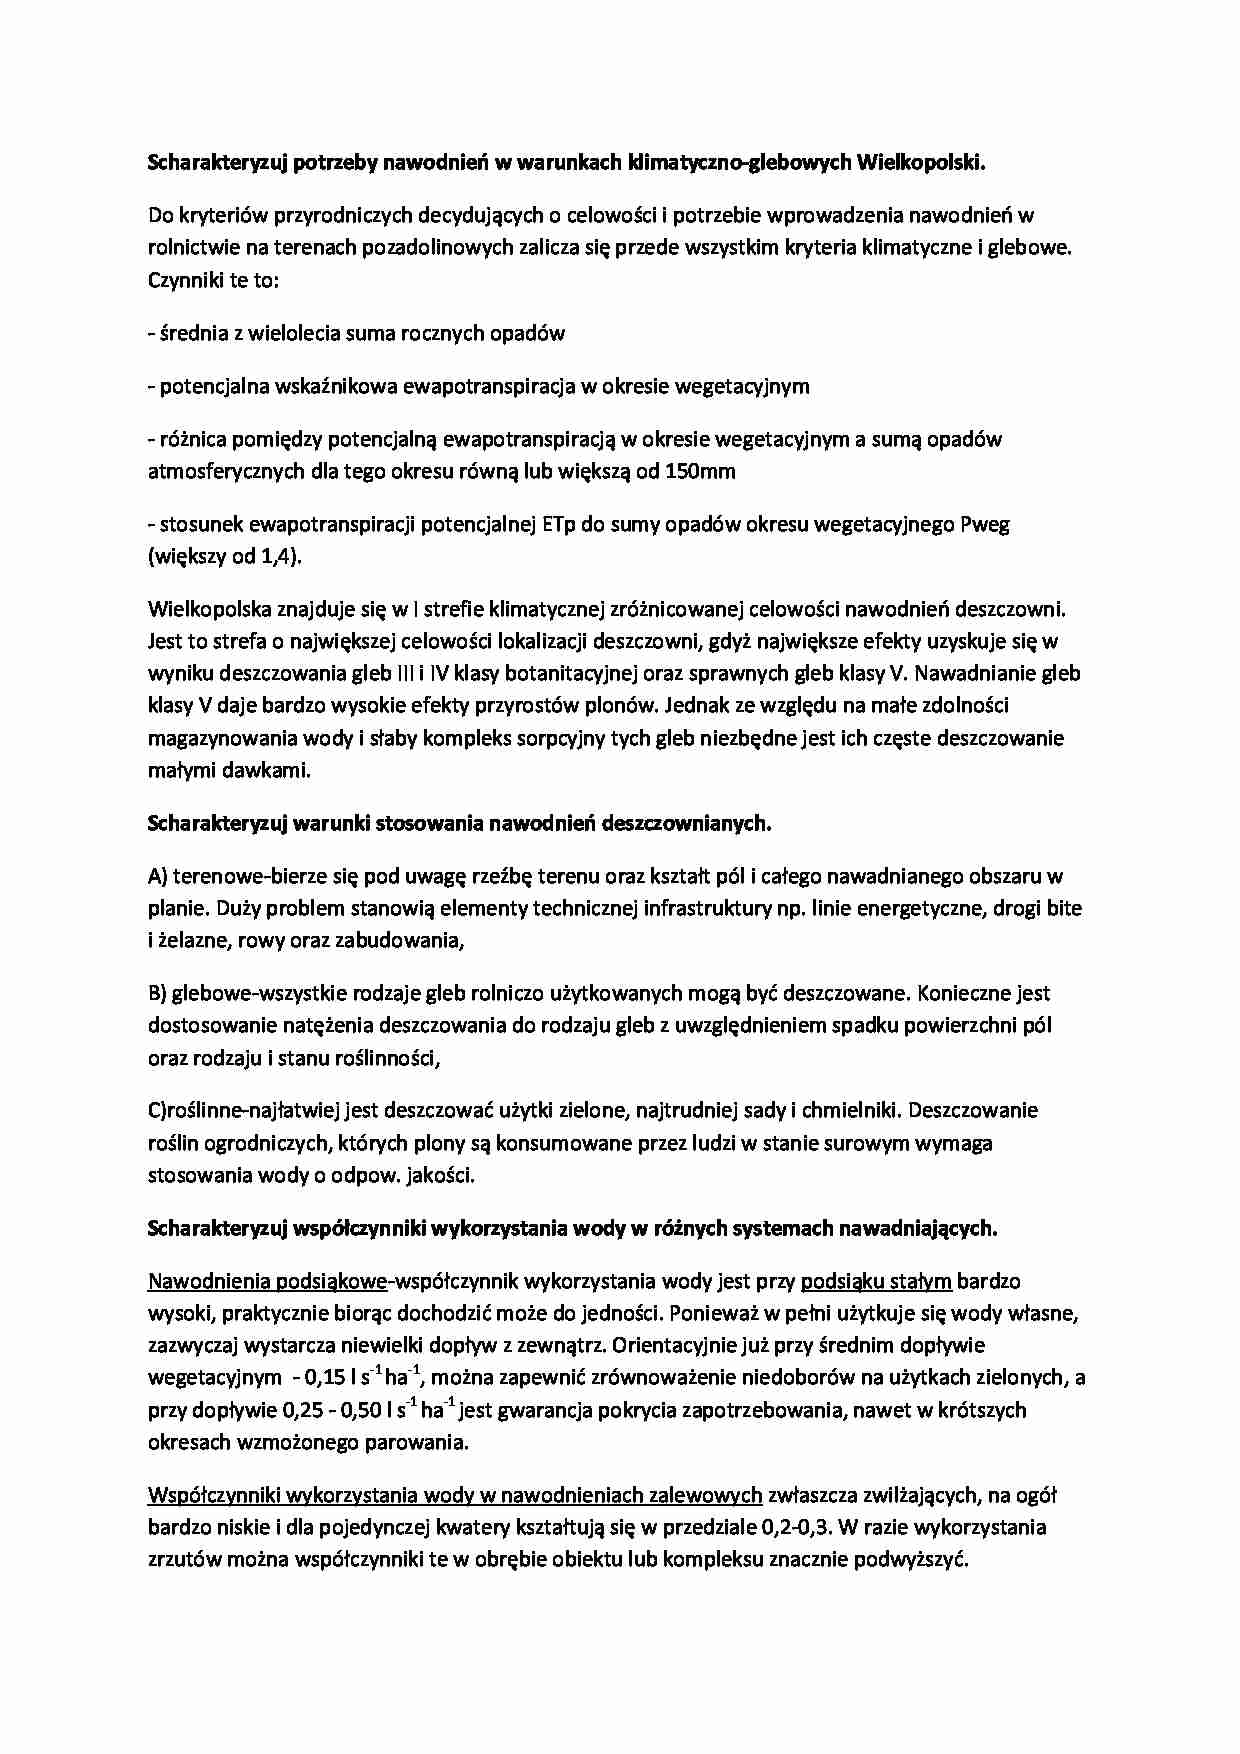 Potrzeby nawodnień w warunkach klimatyczno-glebowych Wielkopolski-opracowanie - strona 1